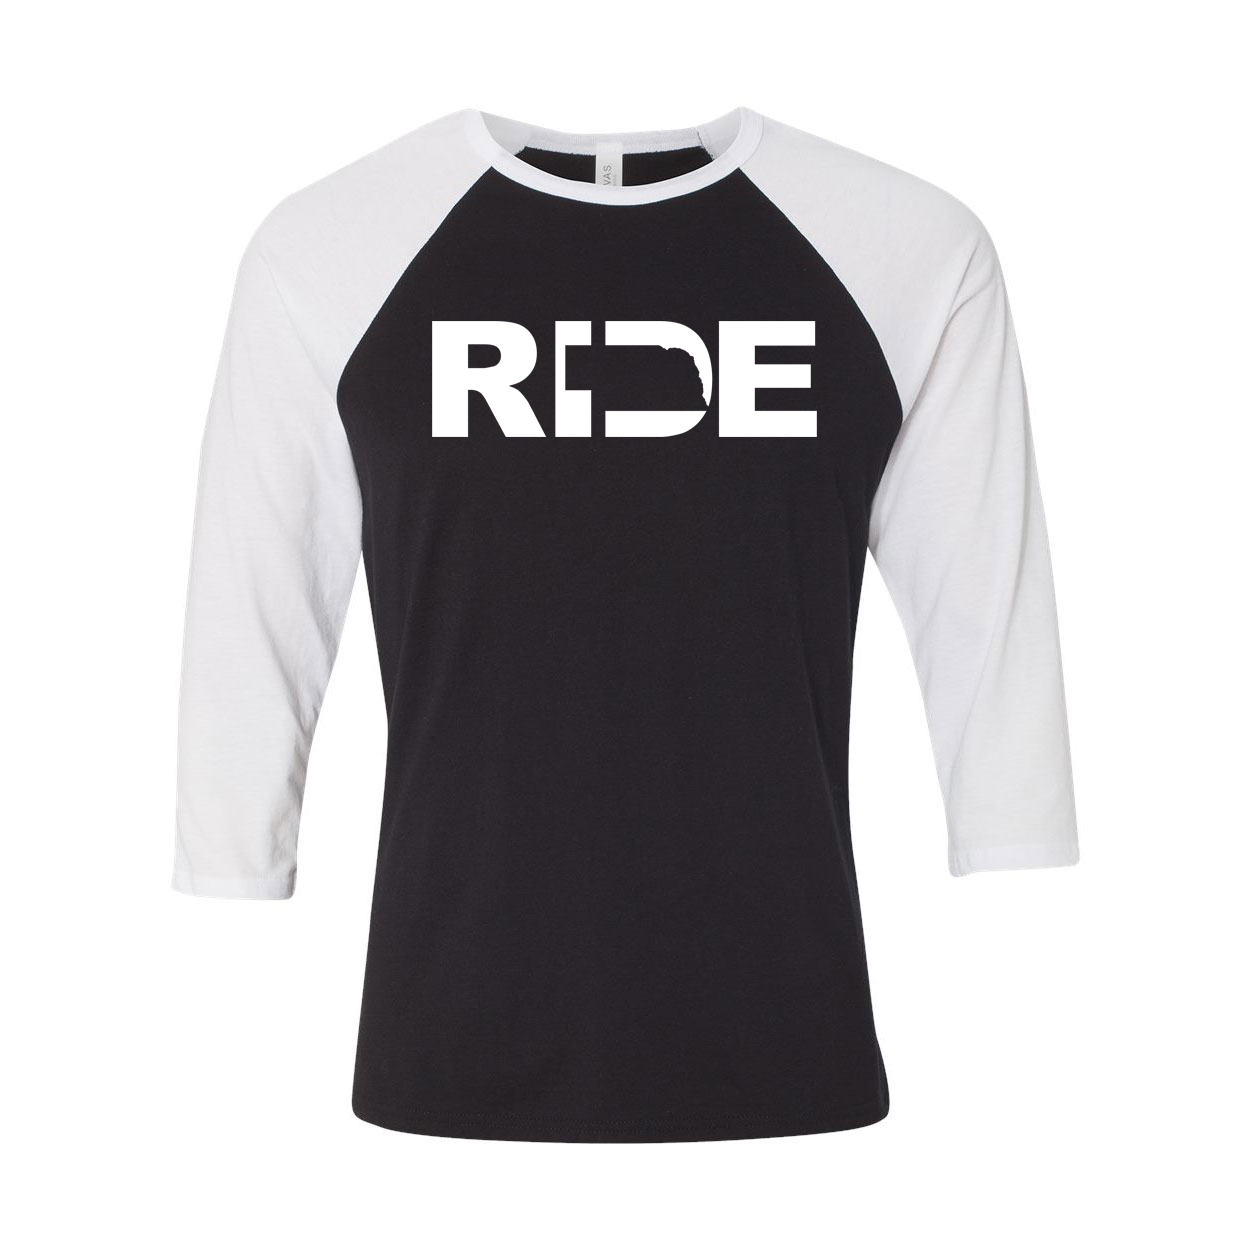 Ride Nebraska Classic Raglan Shirt Black/White (White Logo)